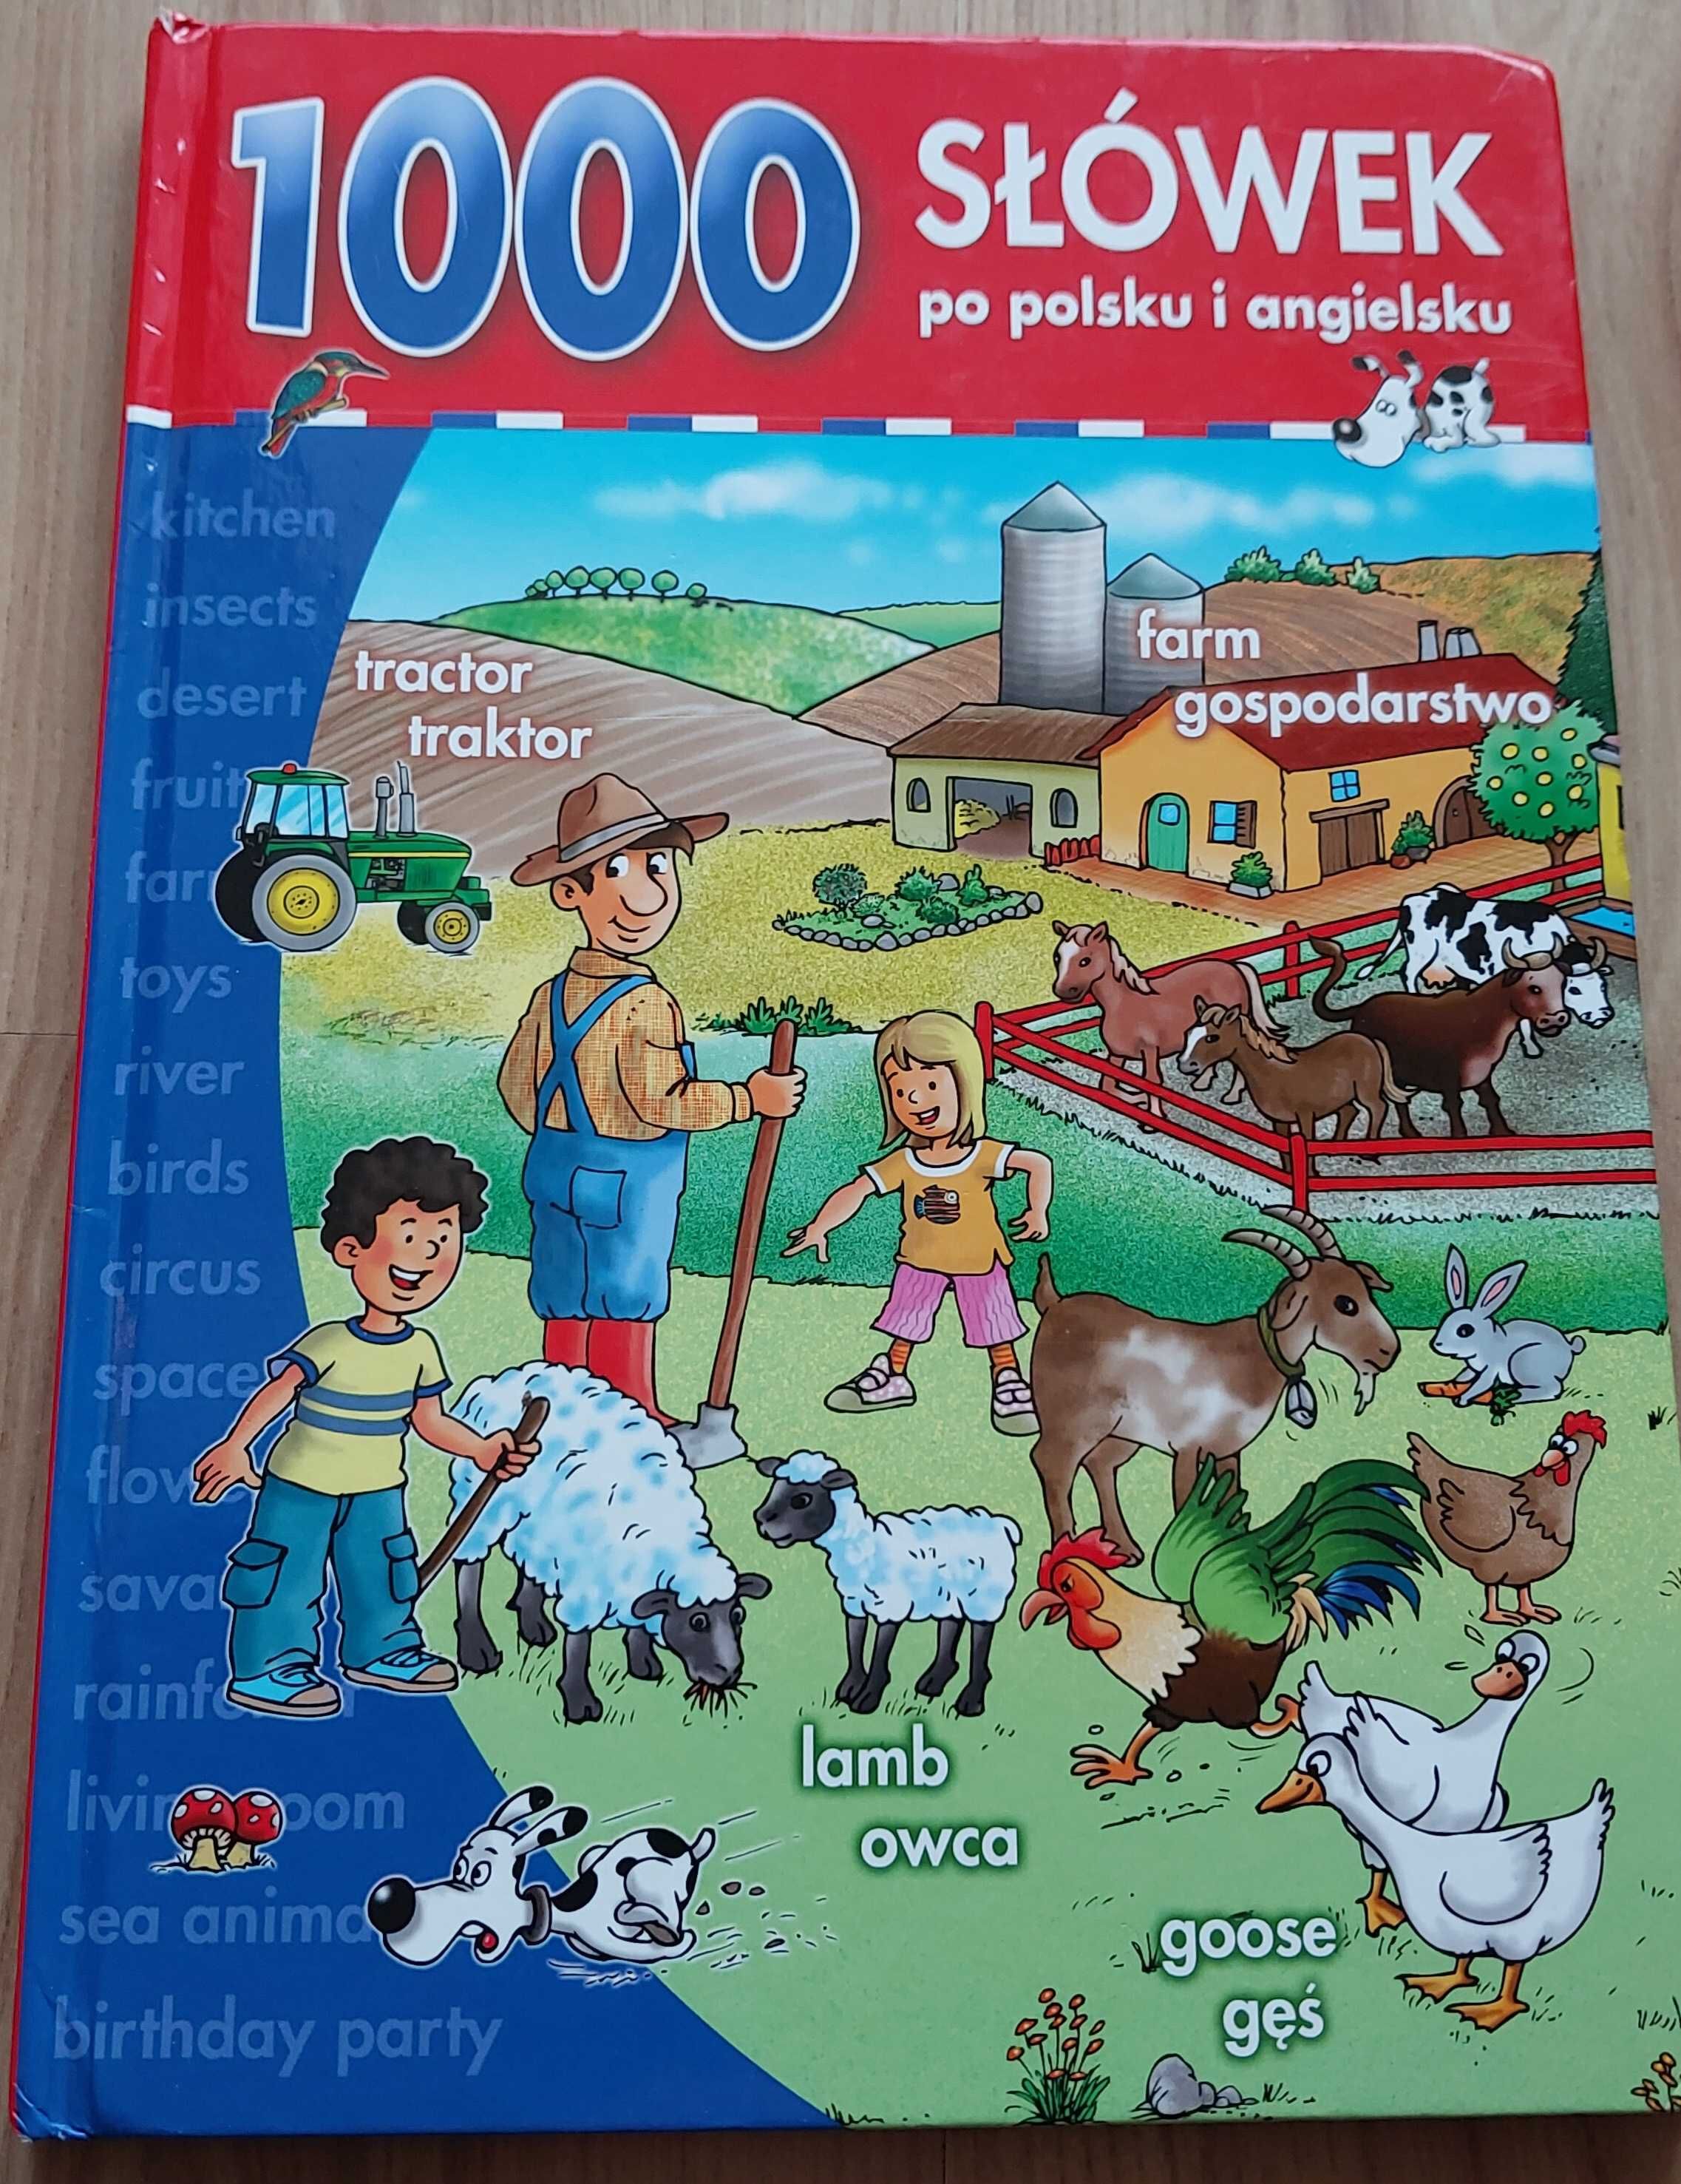 1000 słówek po polsku i angielsku - słownik obrazkowy dla dzieci